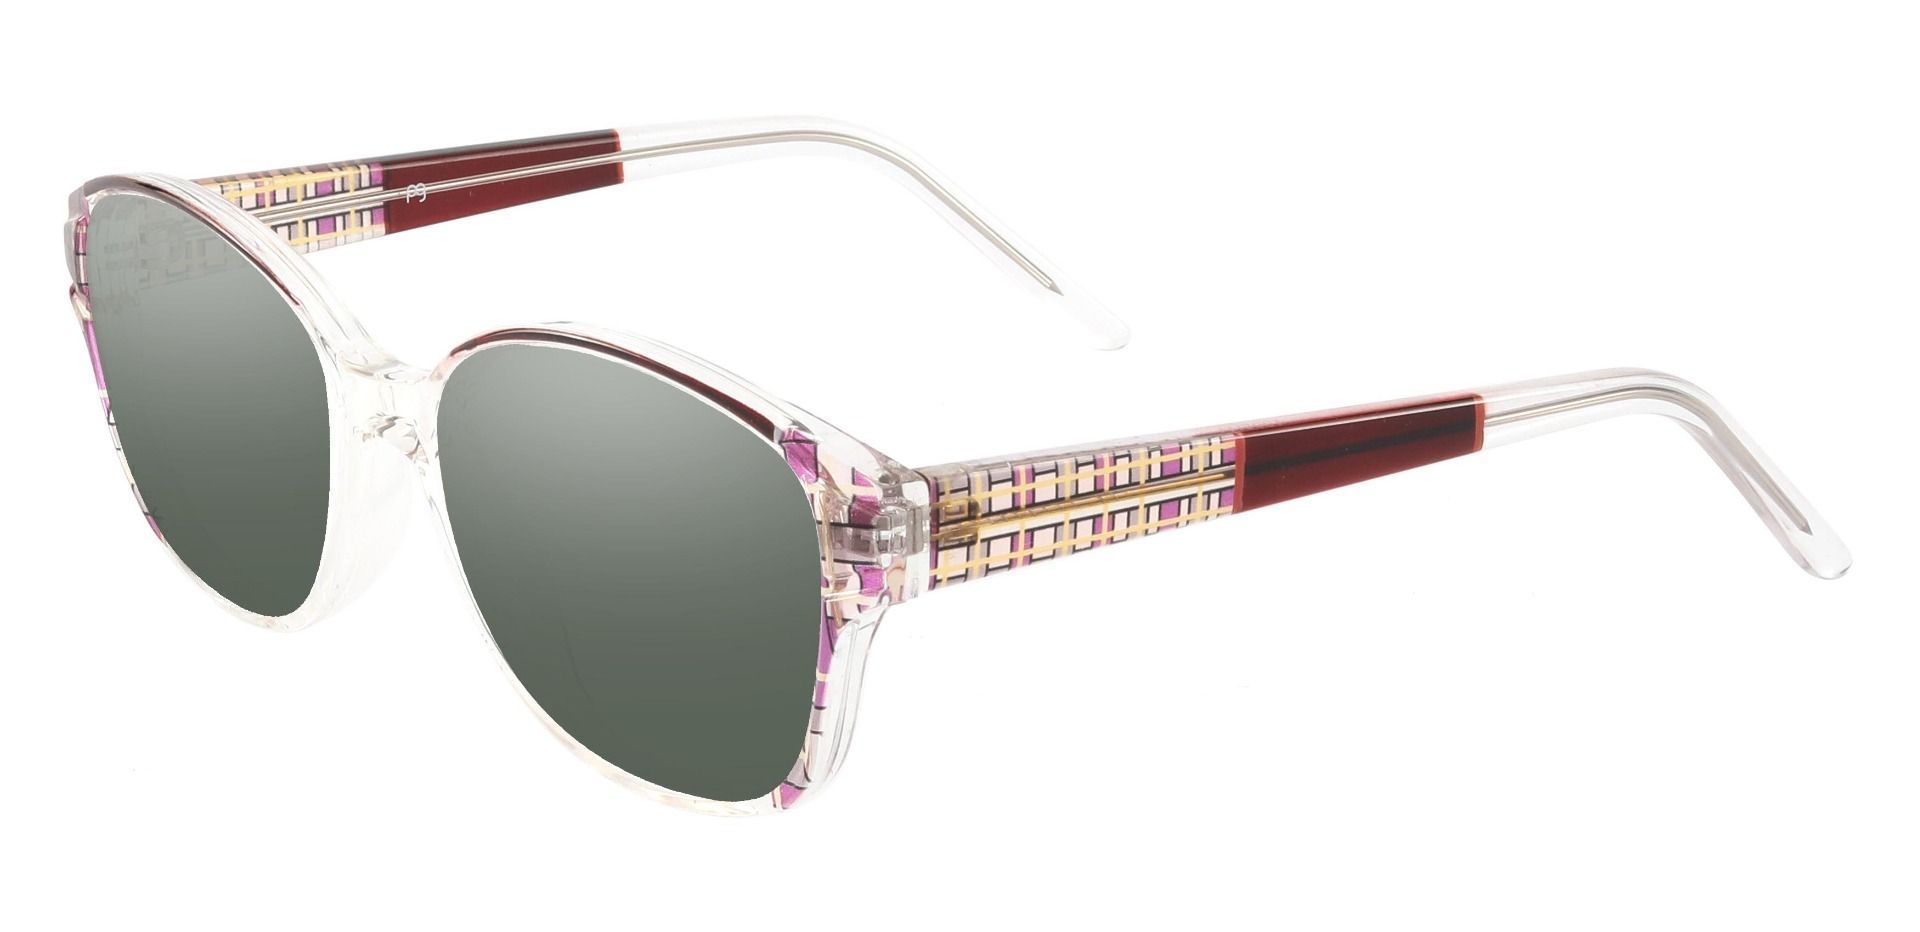 Moira Oval Progressive Sunglasses - Pink Frame With Green Lenses